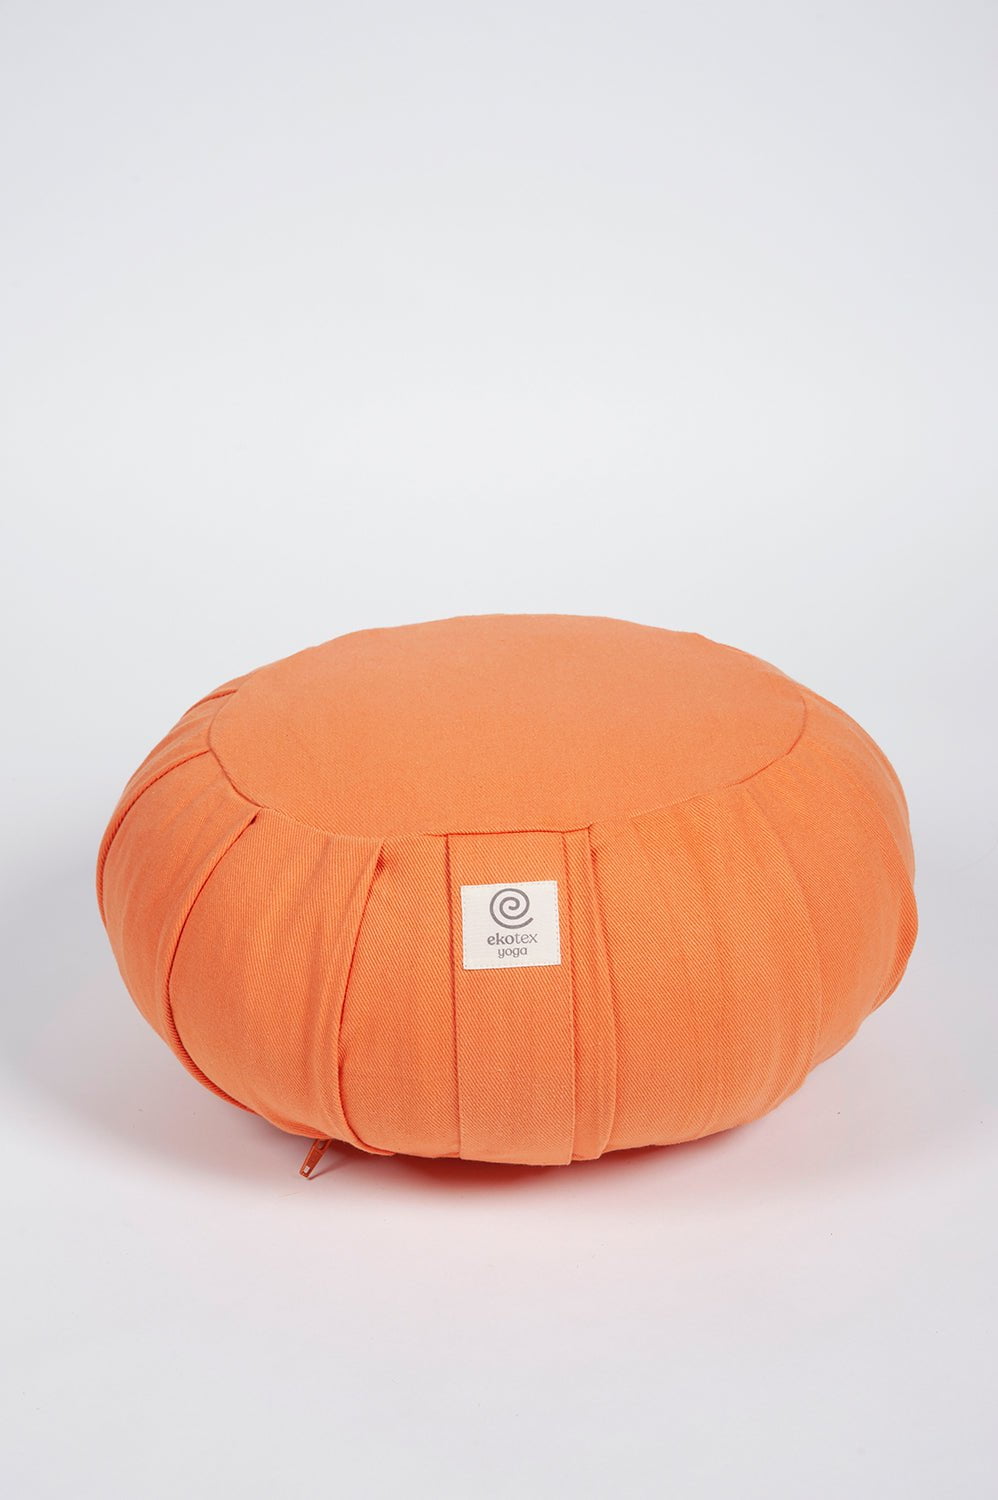 Meditation Cushions Apricot / Buckwheat Organic Cotton Round Zafu Cushion